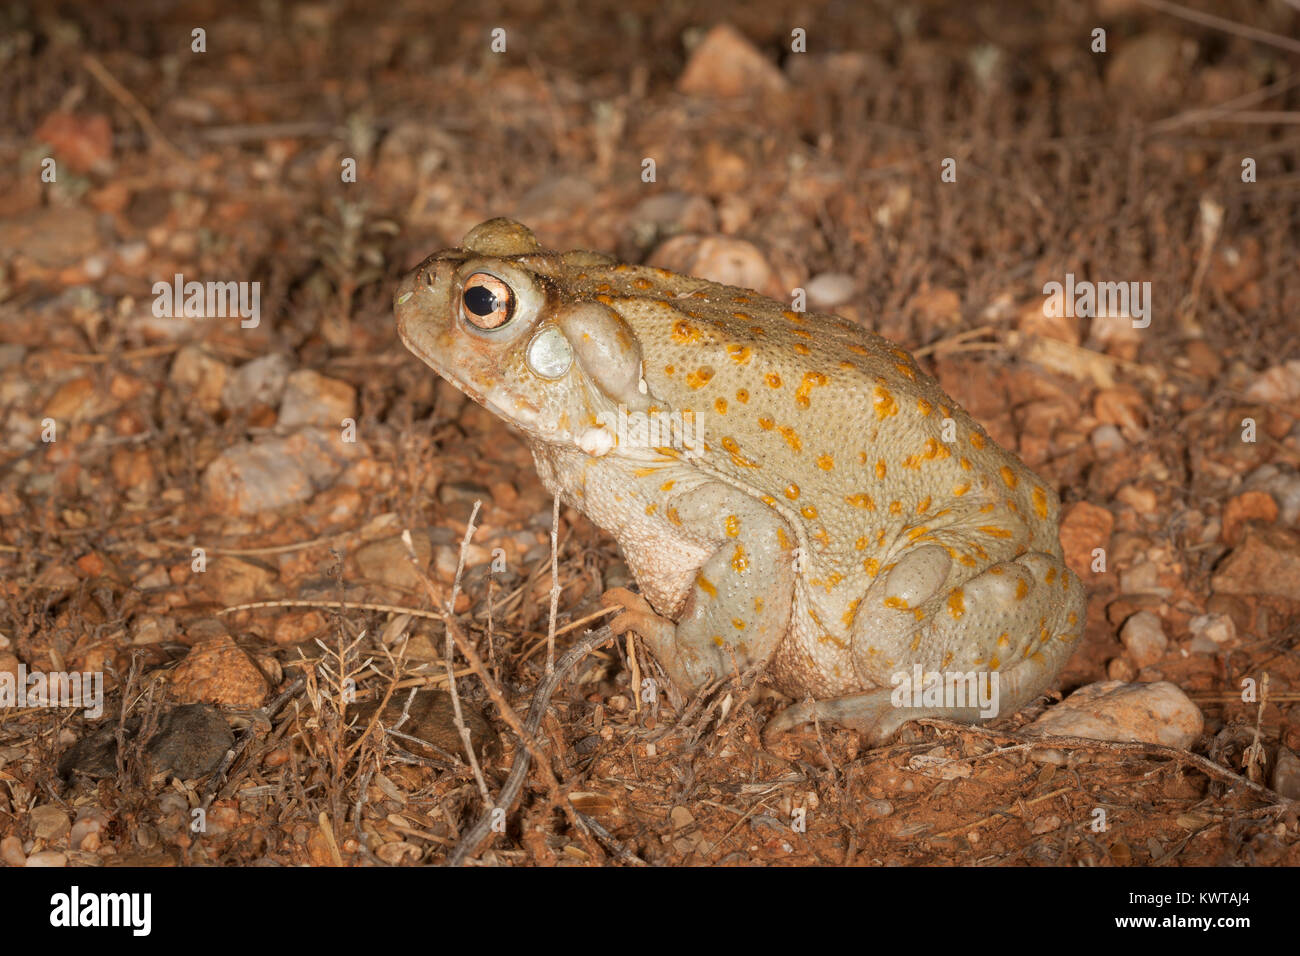 Désert de Sonora (crapaud crapaud du Colorado), Incilius alvarius (Bufo alvarius). Glandes à venin derrière la tête et sur les jambes sont clairement visibles. Banque D'Images